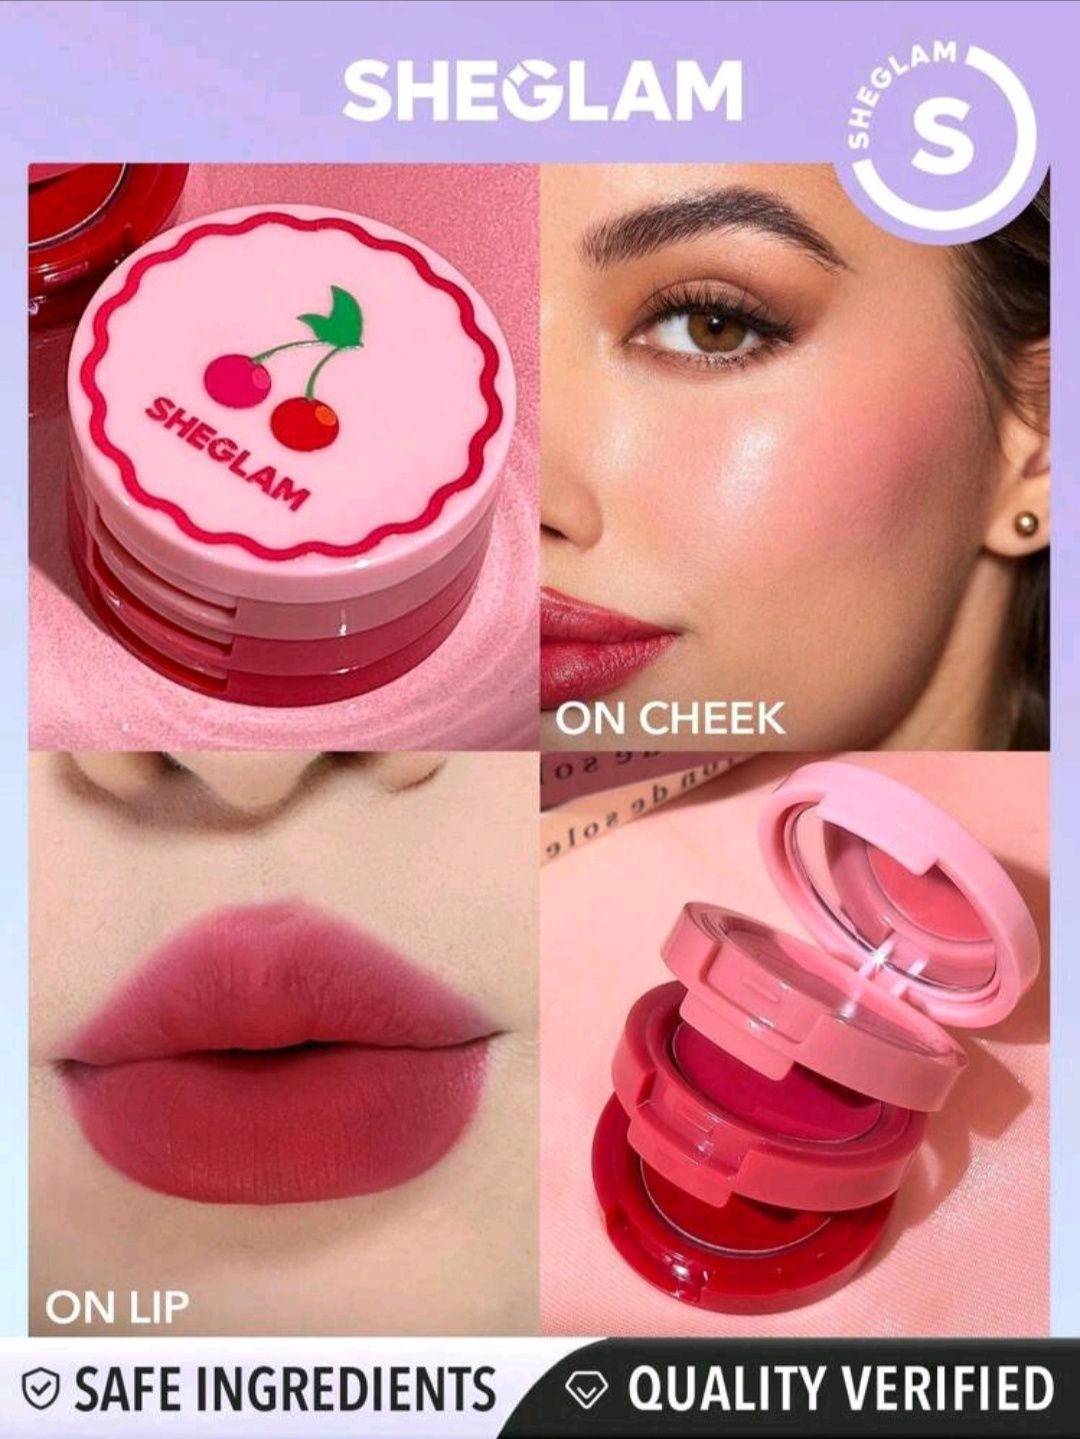 Sheglam cherry lip cream